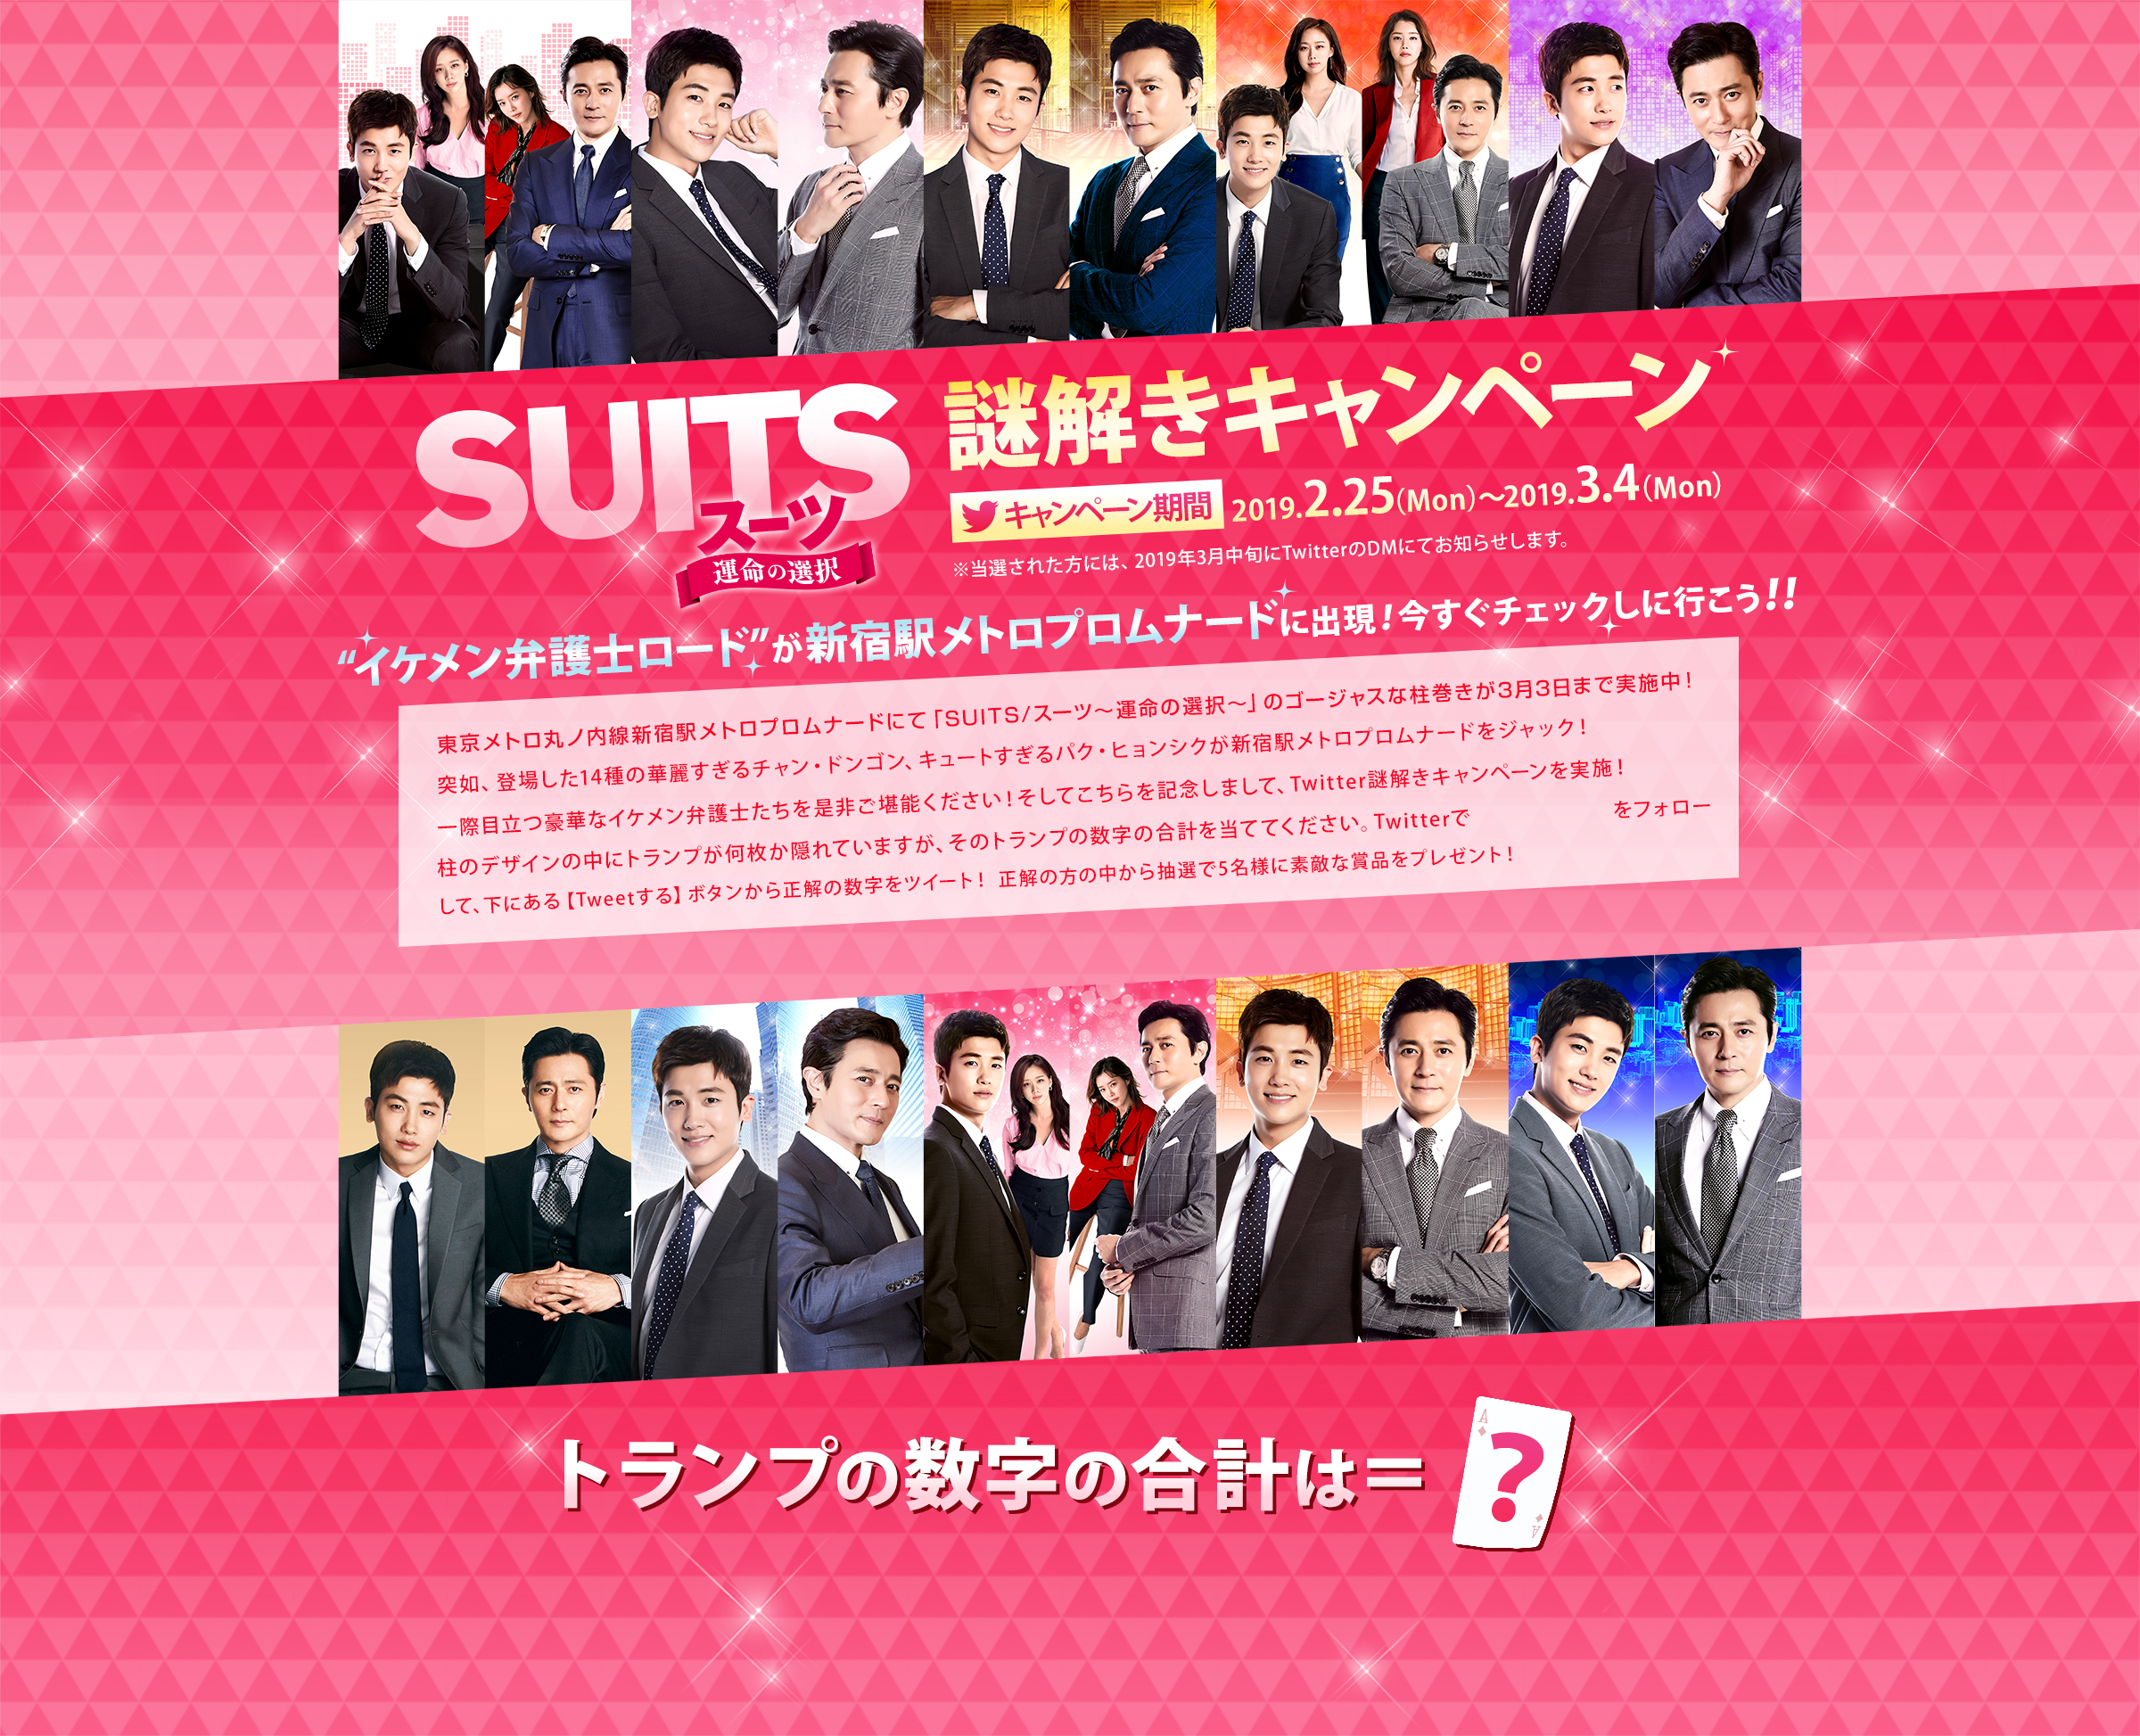 「SUITS/スーツ〜運命の選択〜」謎解きキャンペーン